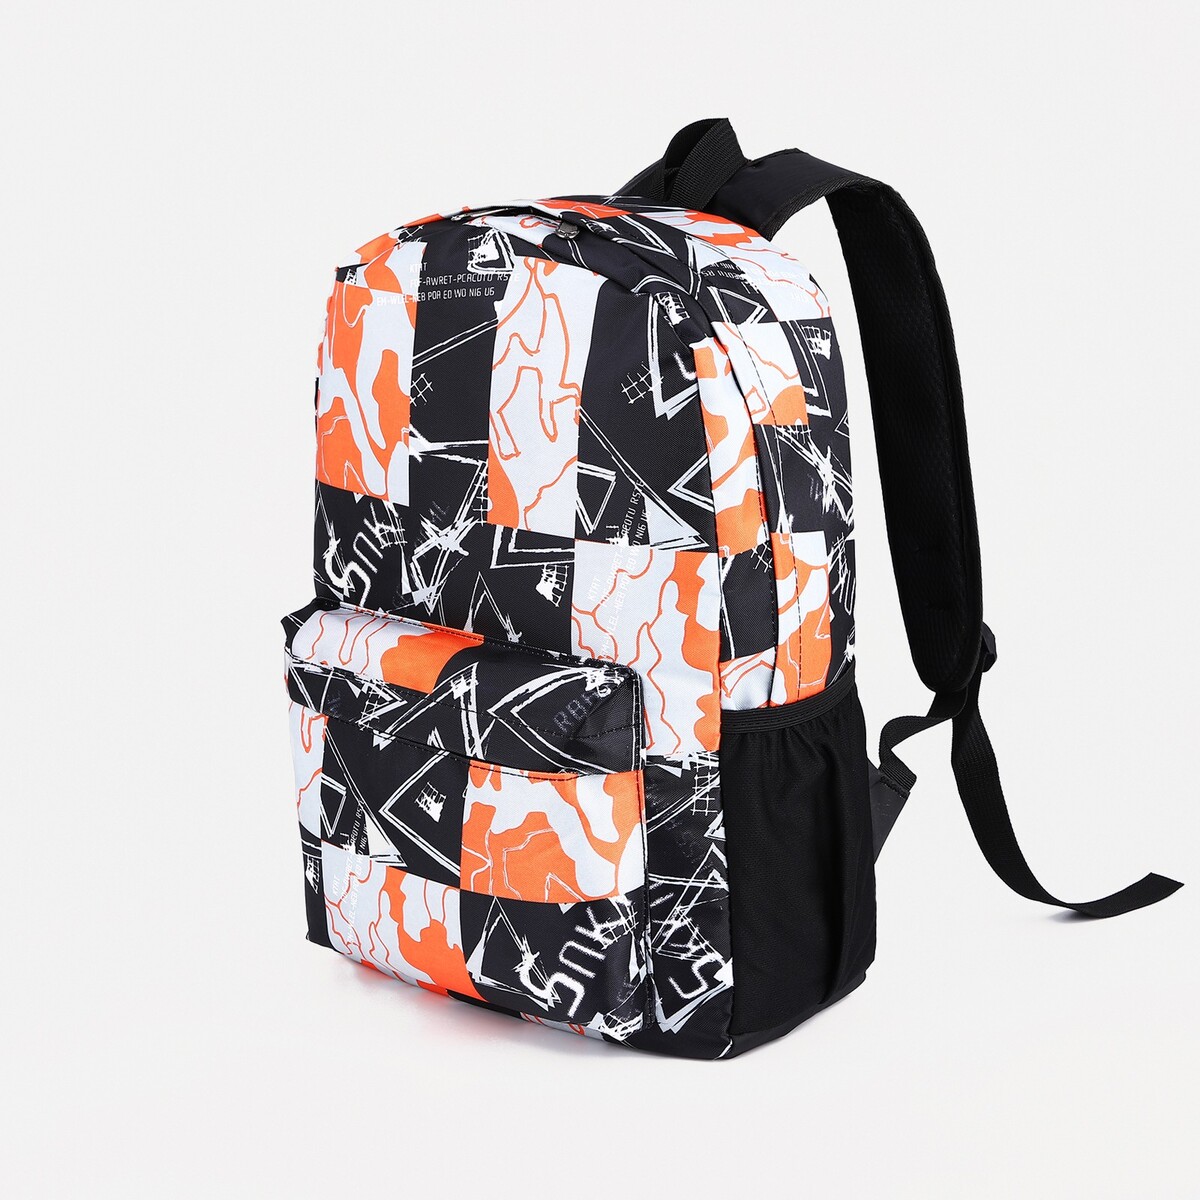 Рюкзак школьный из текстиля на молнии, 3 кармана, цвет оранжевый/черный